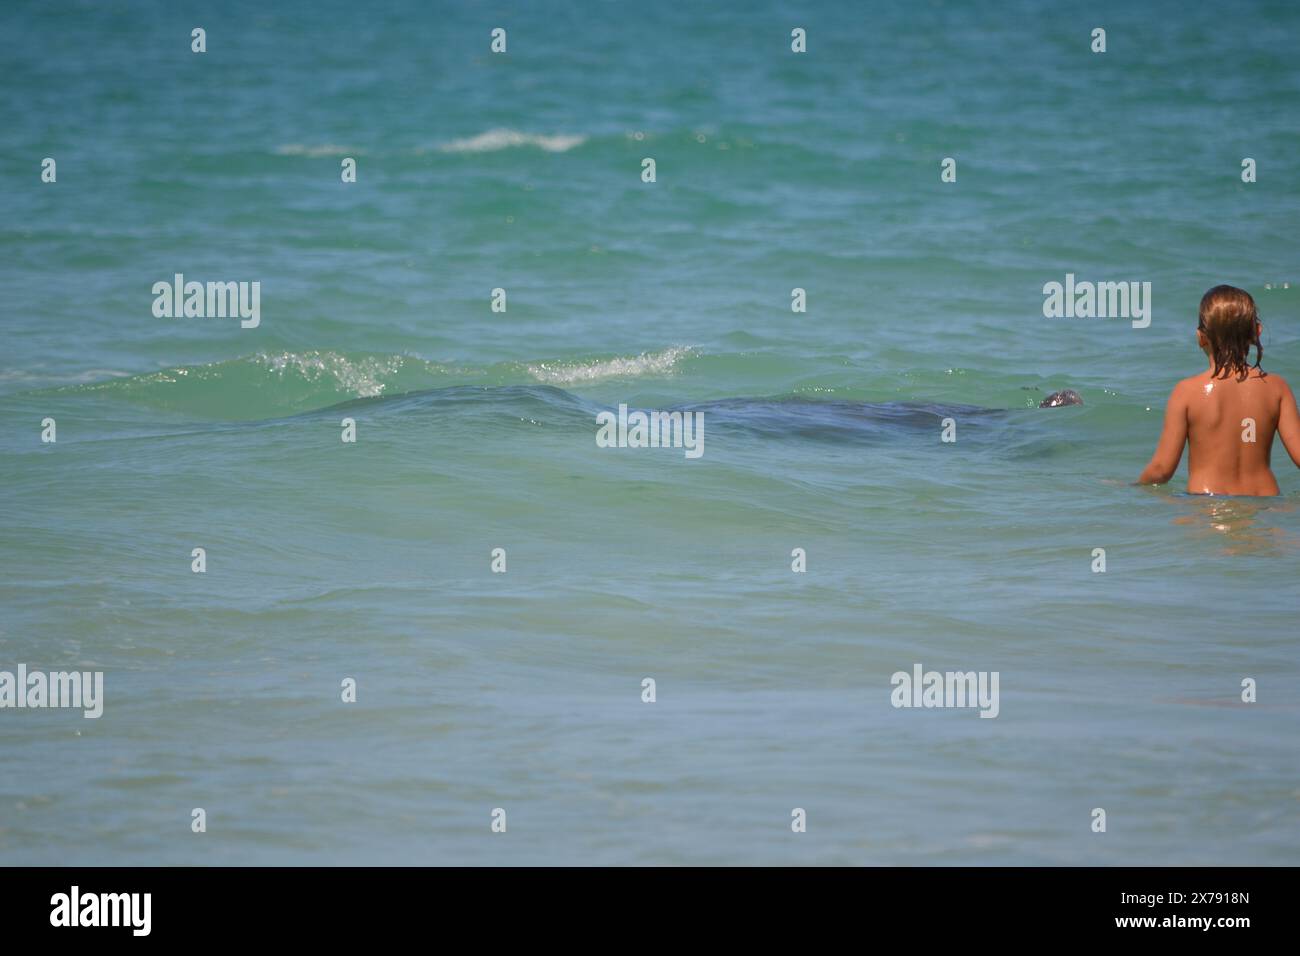 Un jeune garçon se tient au plus profond de la taille dans l'océan tandis qu'un lamantin fait surface, son nez émergeant des eaux turquoises de Ponce Inlet, Jetty Beach, en Floride. Banque D'Images